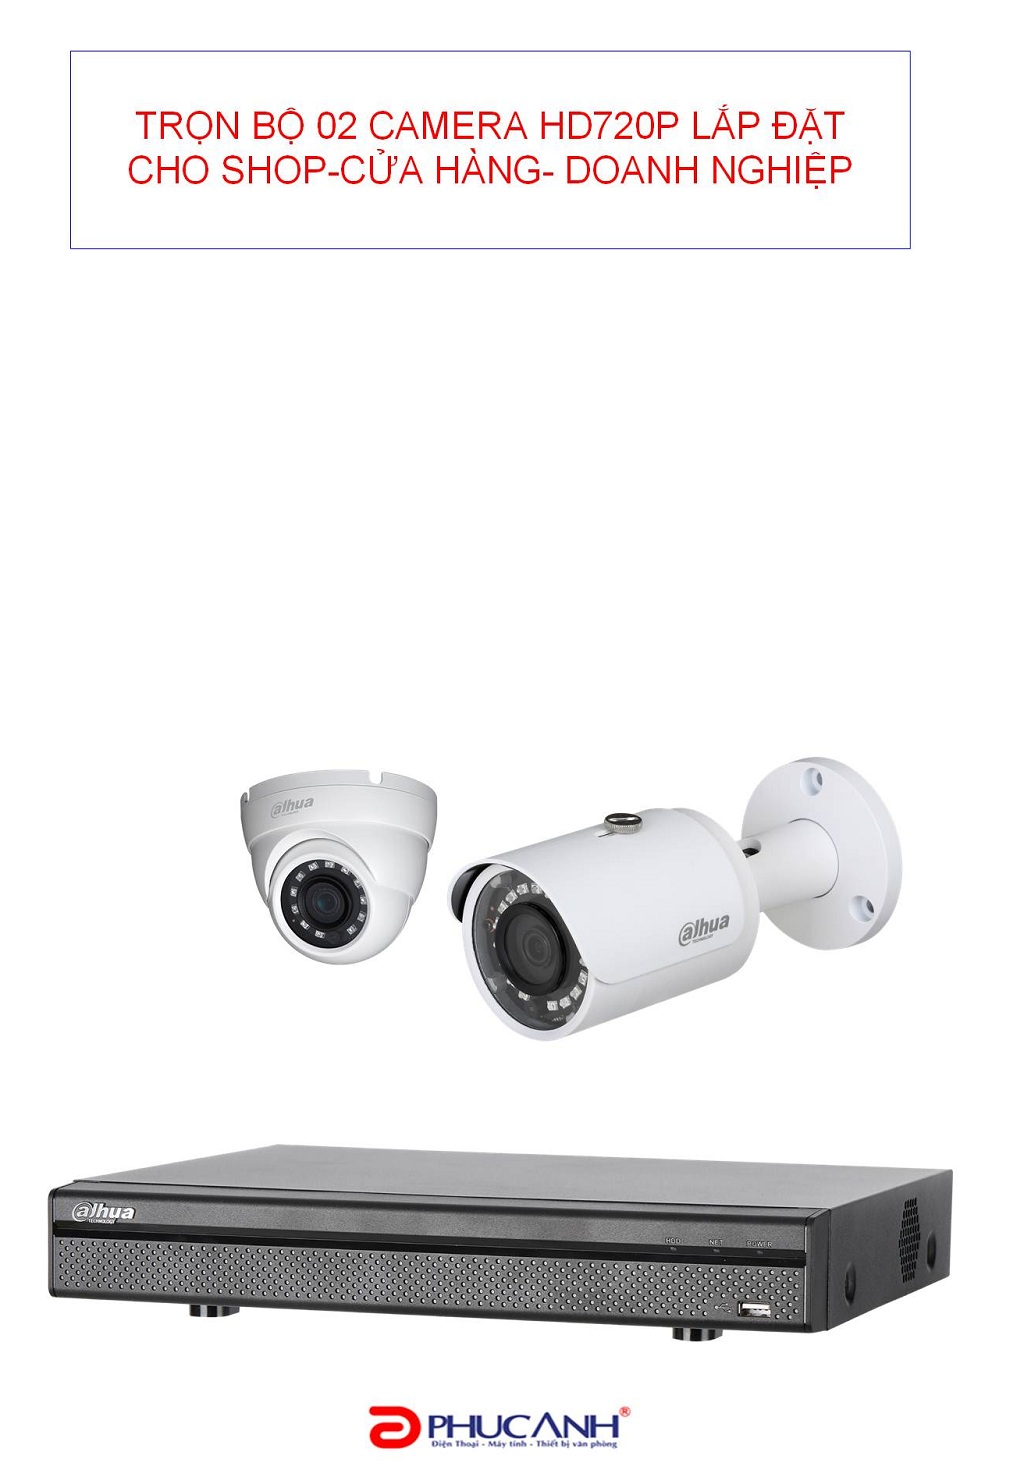 Trọn gói lắp đặt 02 camera analog 1.0 MP cho Shop-Cửa hàng- Doanh nghiệp